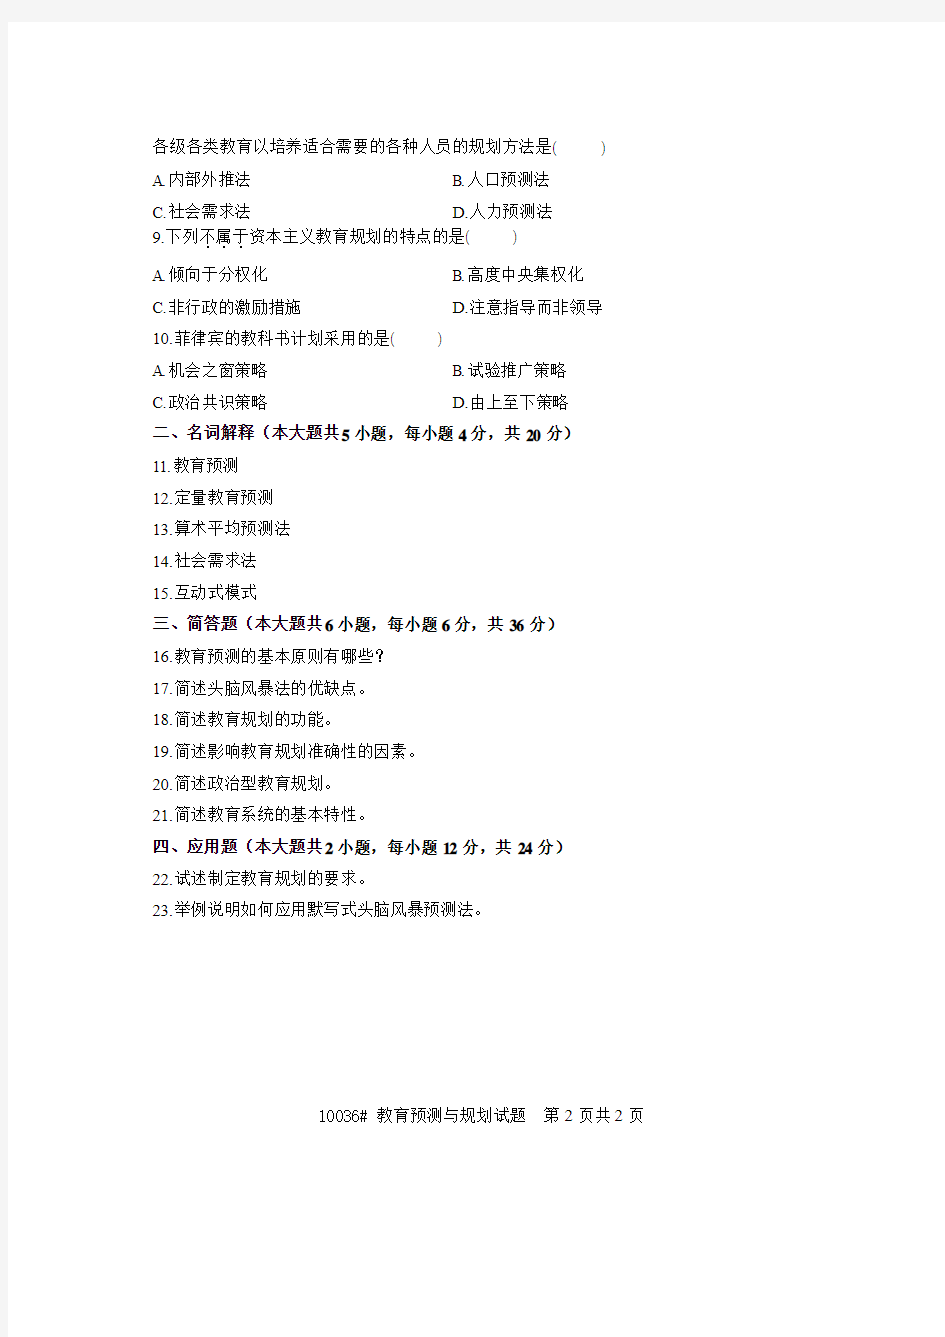 浙江省2007年1月高等教育自学考试 教育预测与规划试题 课程代码10036